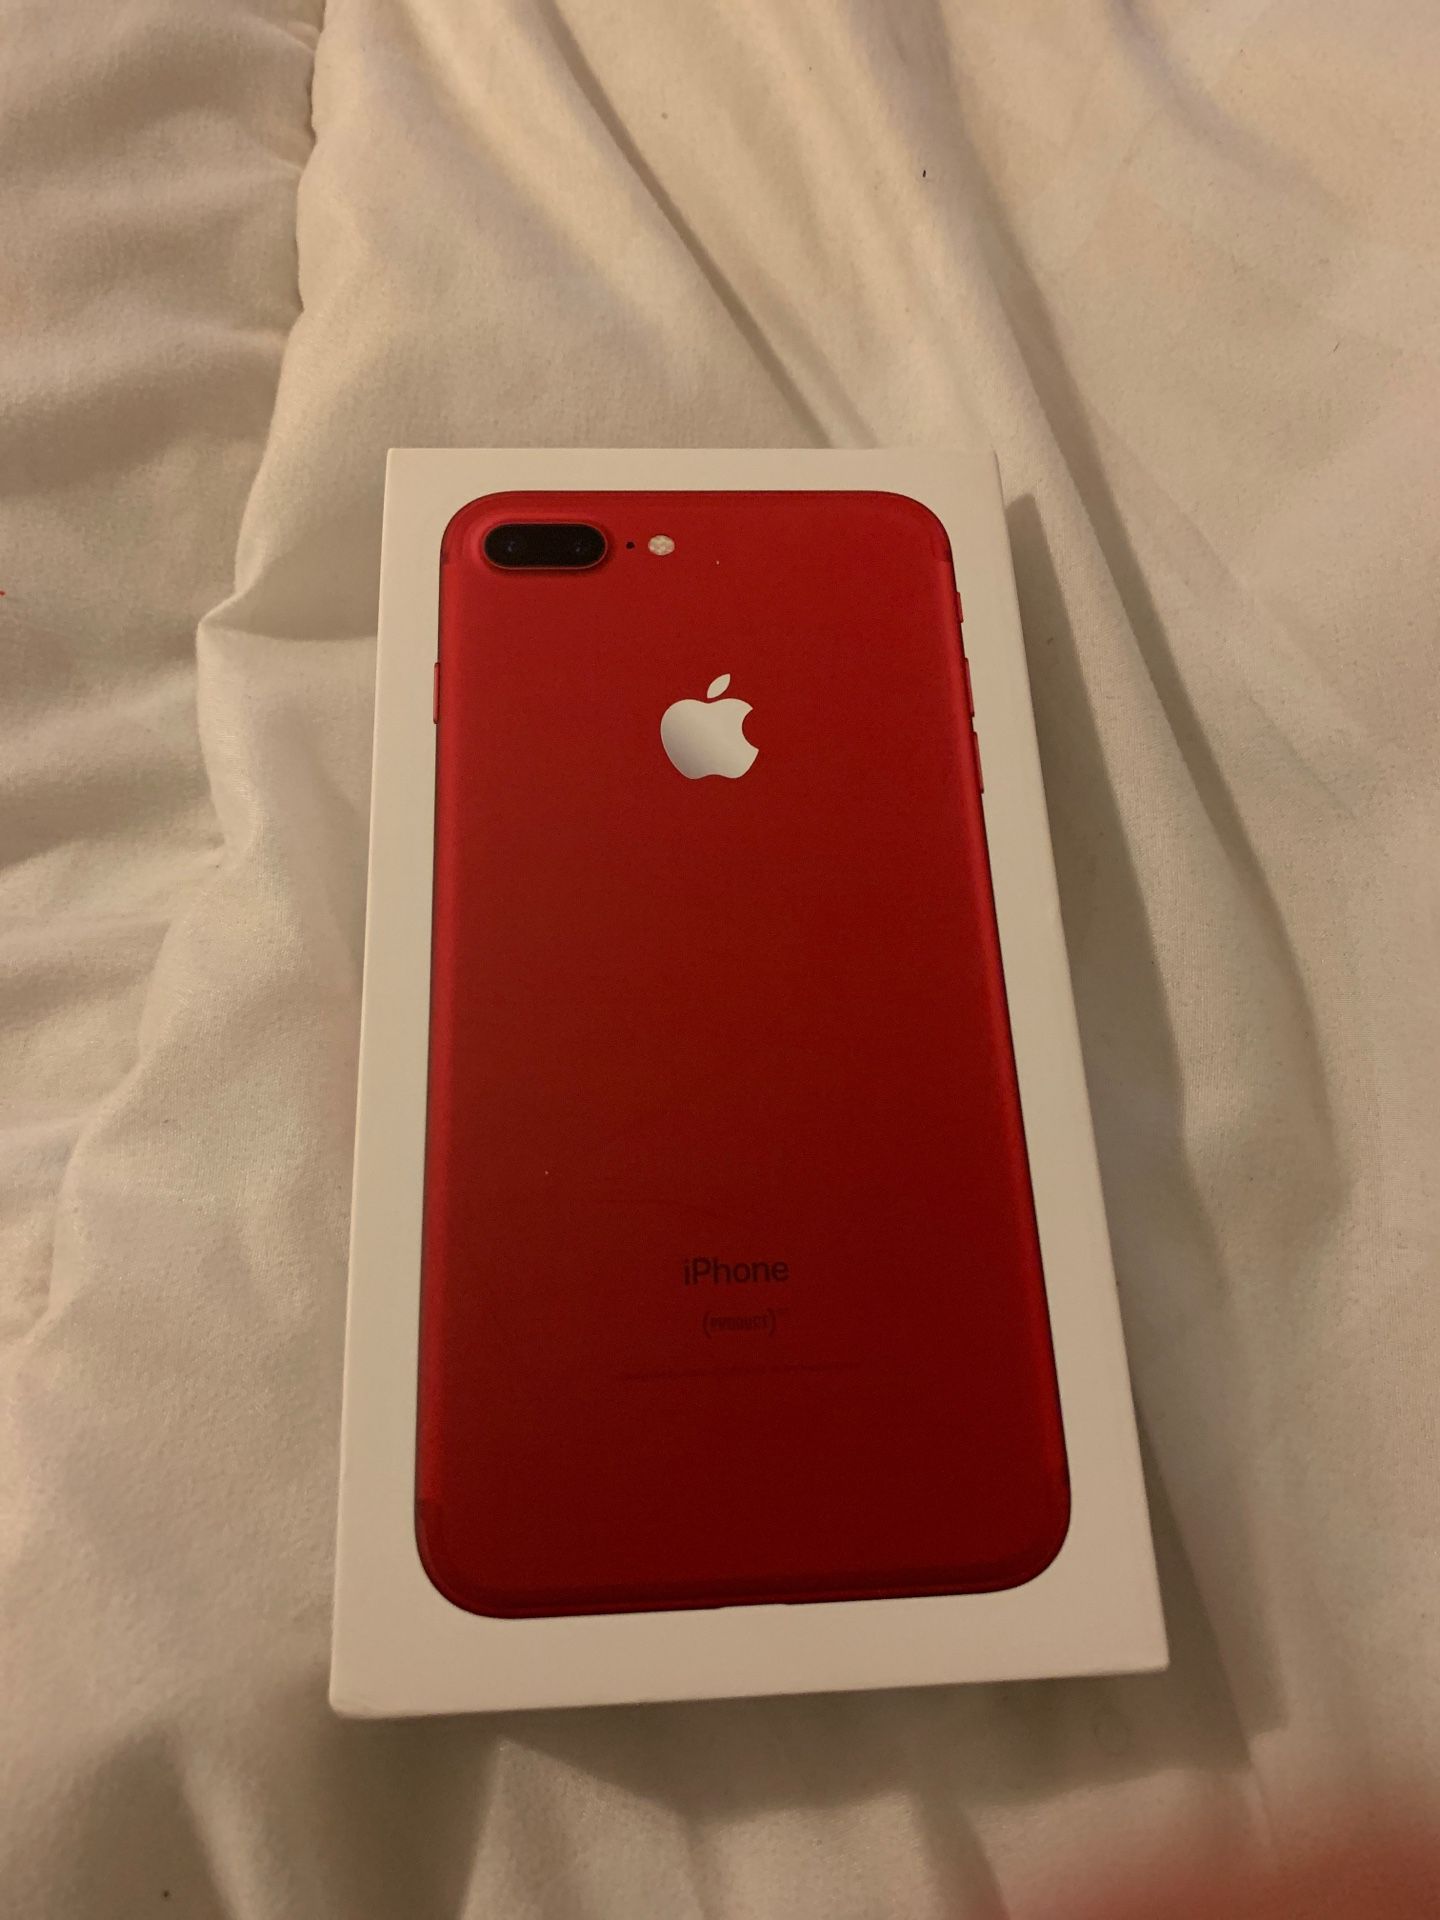 iPhone 7 Plus, Red, 128 GB